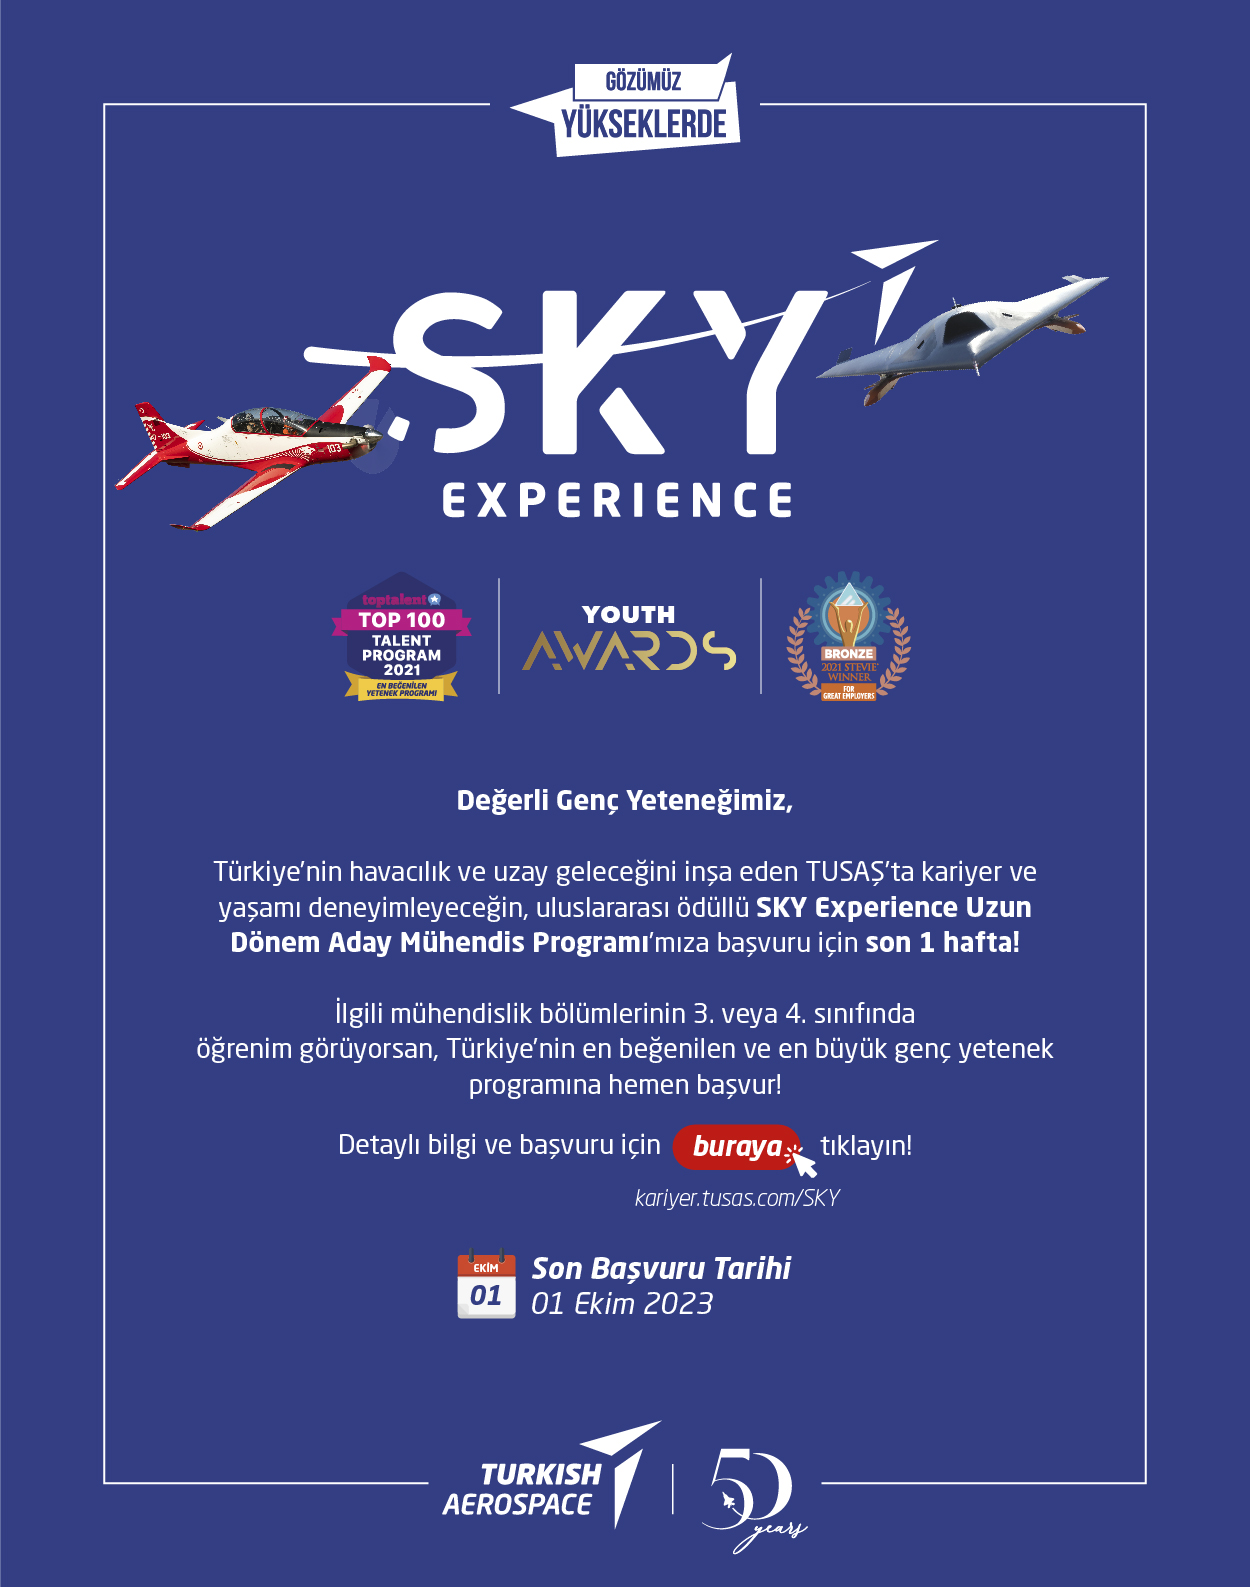 SKY Experience Uzun Dönem Aday Mühendis Programı Başvuru Dönemi Sona Eriyor!